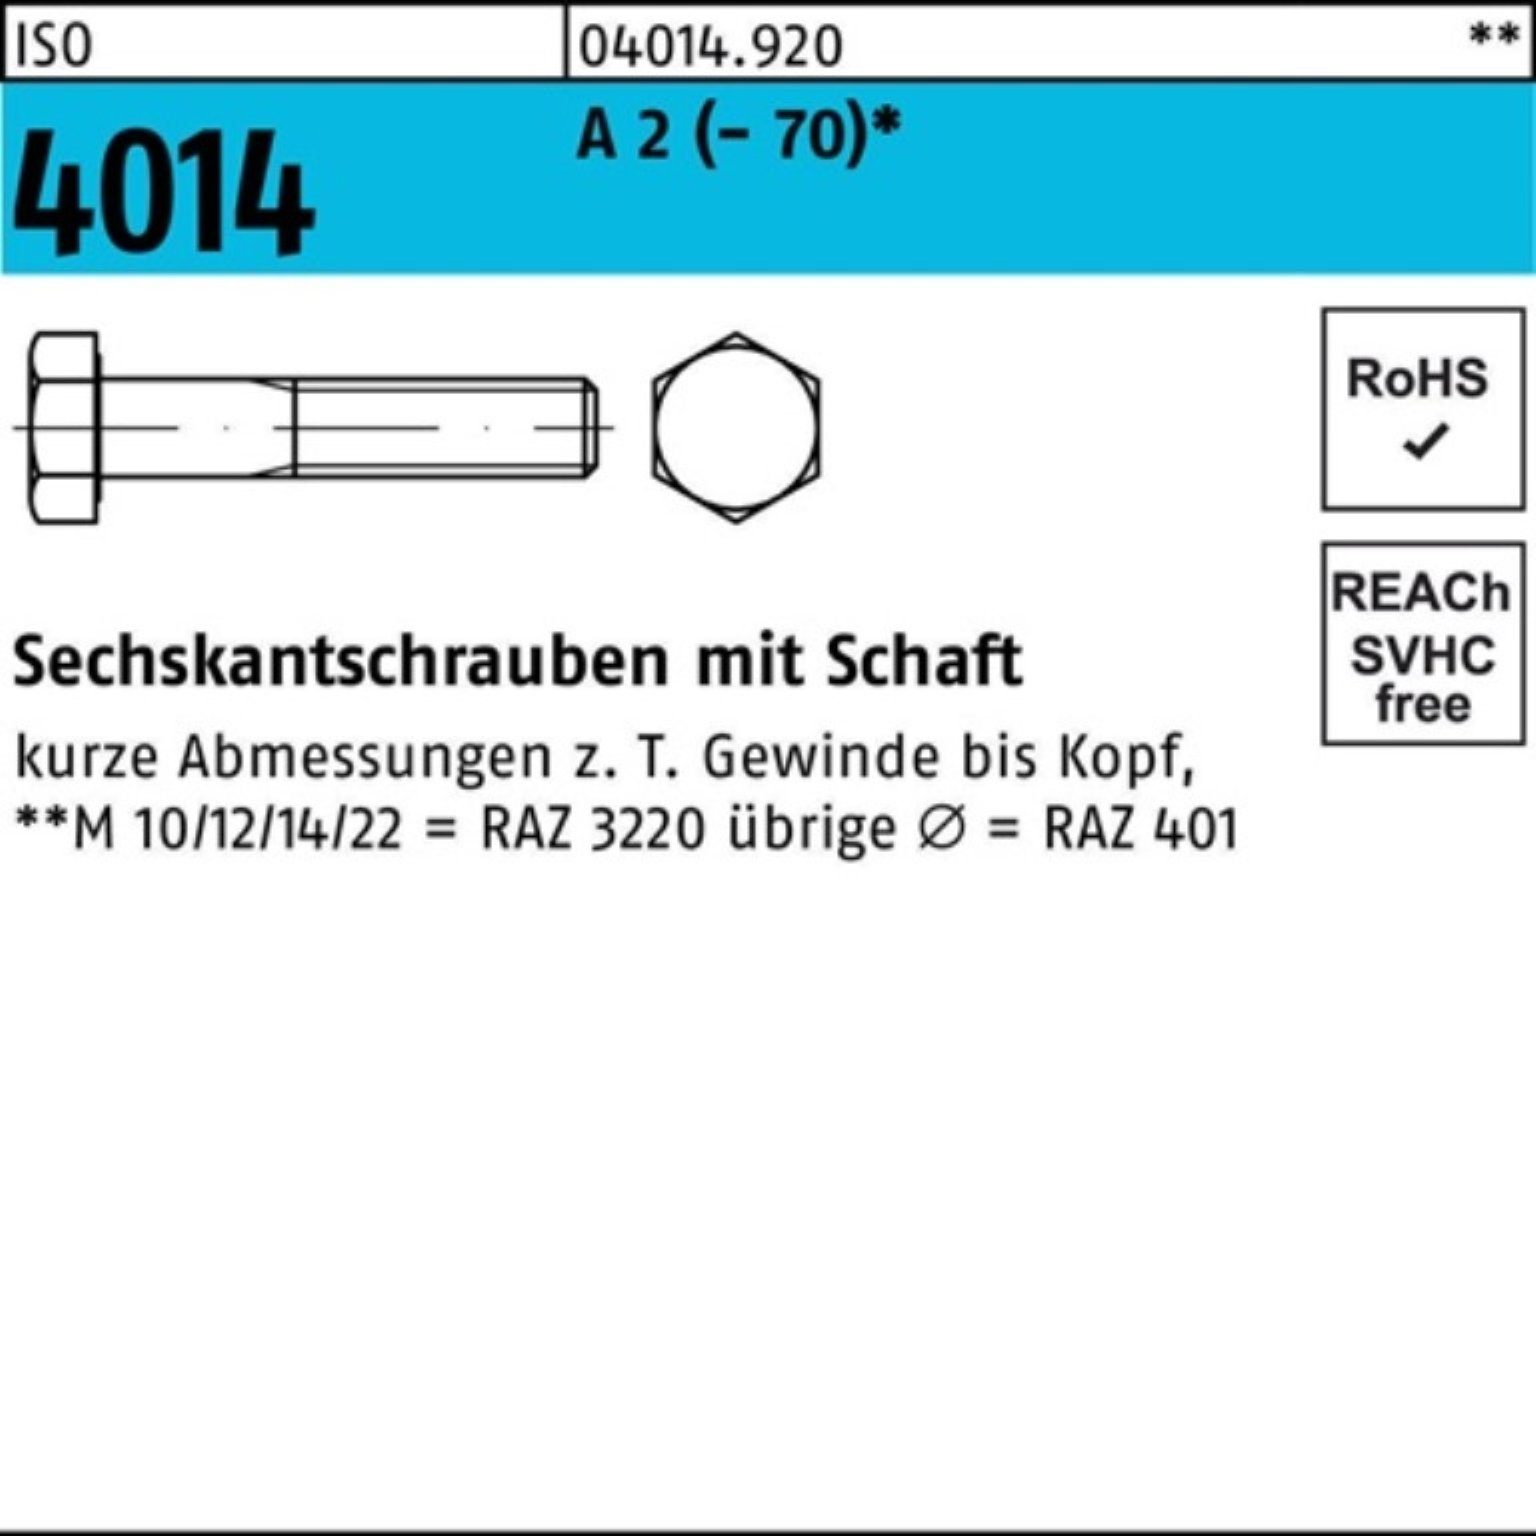 Bufab Sechskantschraube 100er Pack Sechskantschraube M12x A St 4014 ISO 55 2 (70) Schaft 50